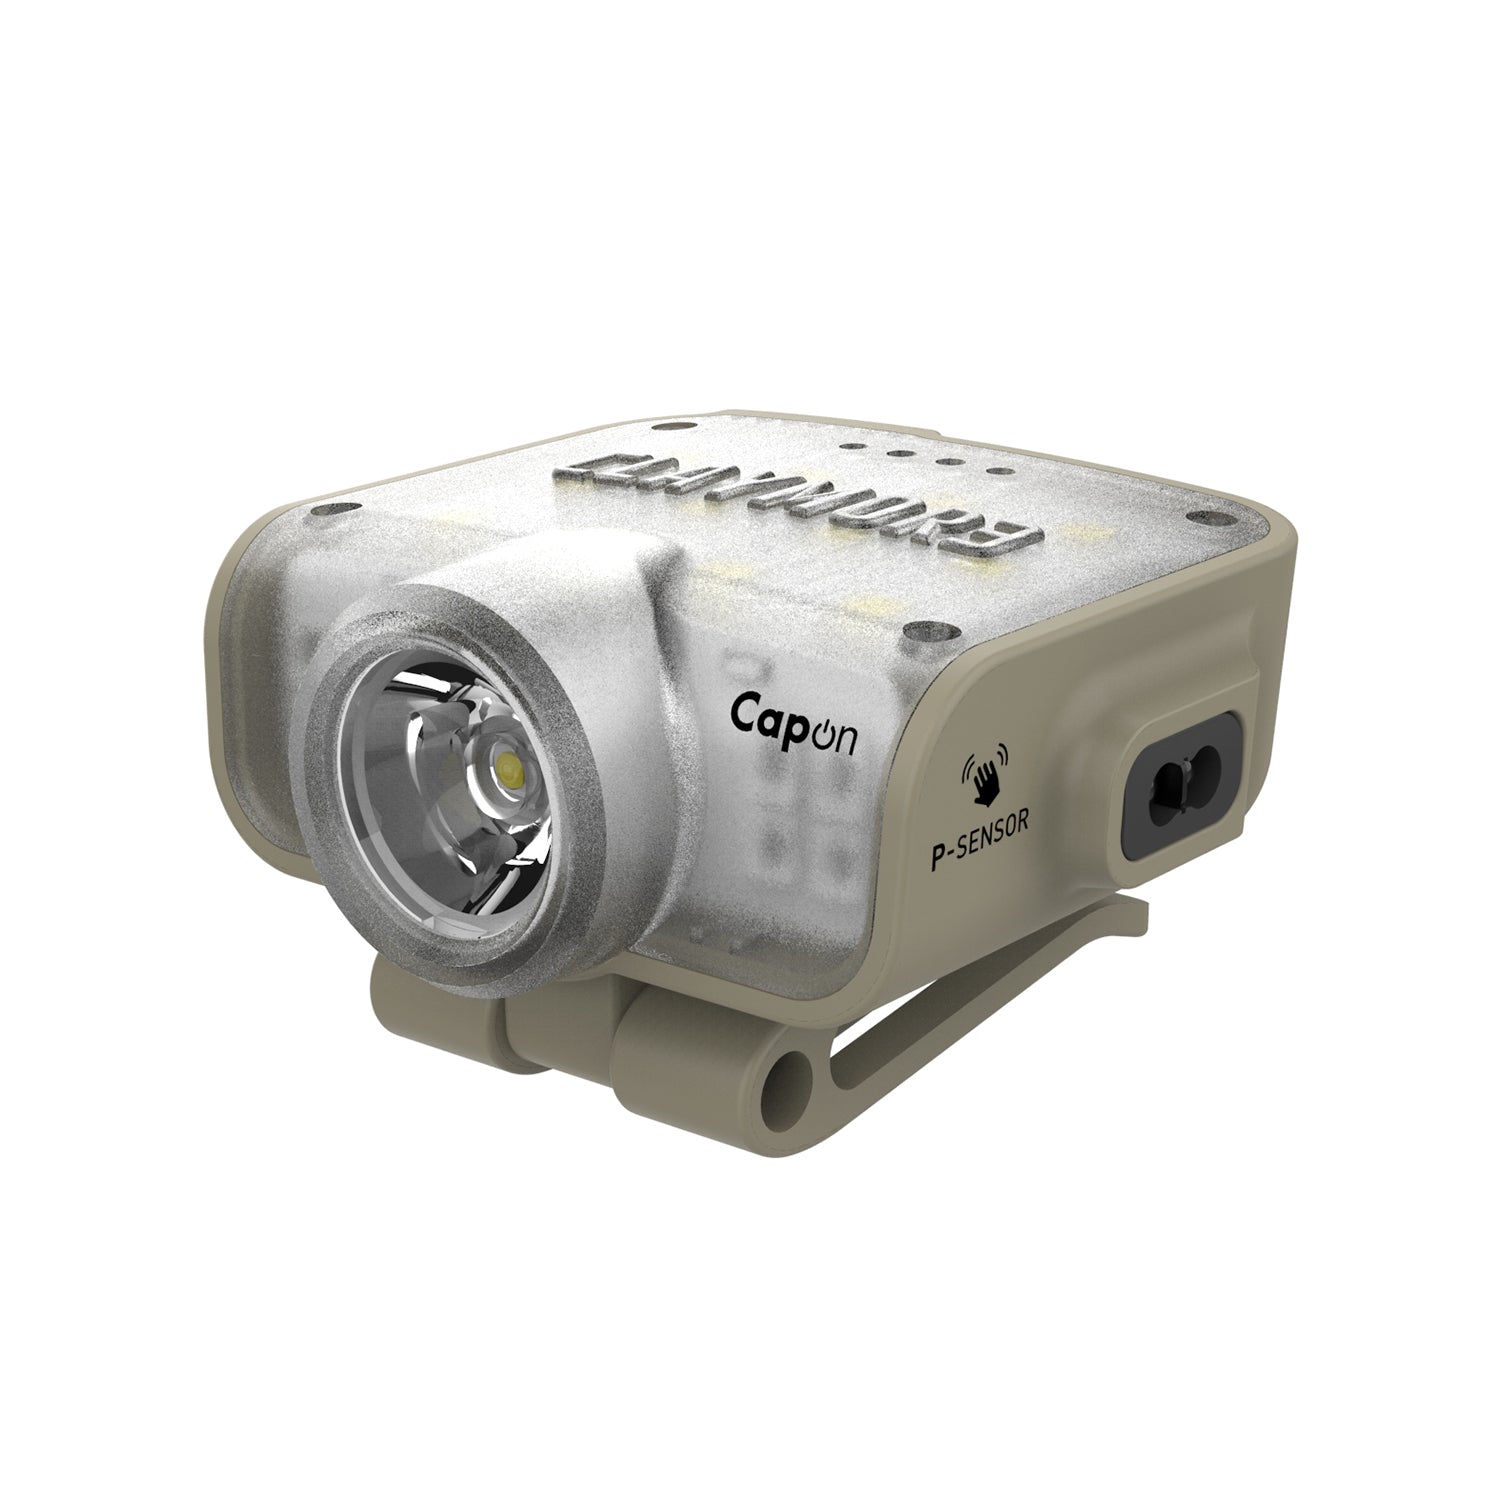 Cap Light / caplight / Head Light / Headlight / Capon / Canada Light / Motion Sensor / Motion sensor light / CLAYMORE CAPON 80C / CAPON80C / RECHARGEABLE CAP LIGHT